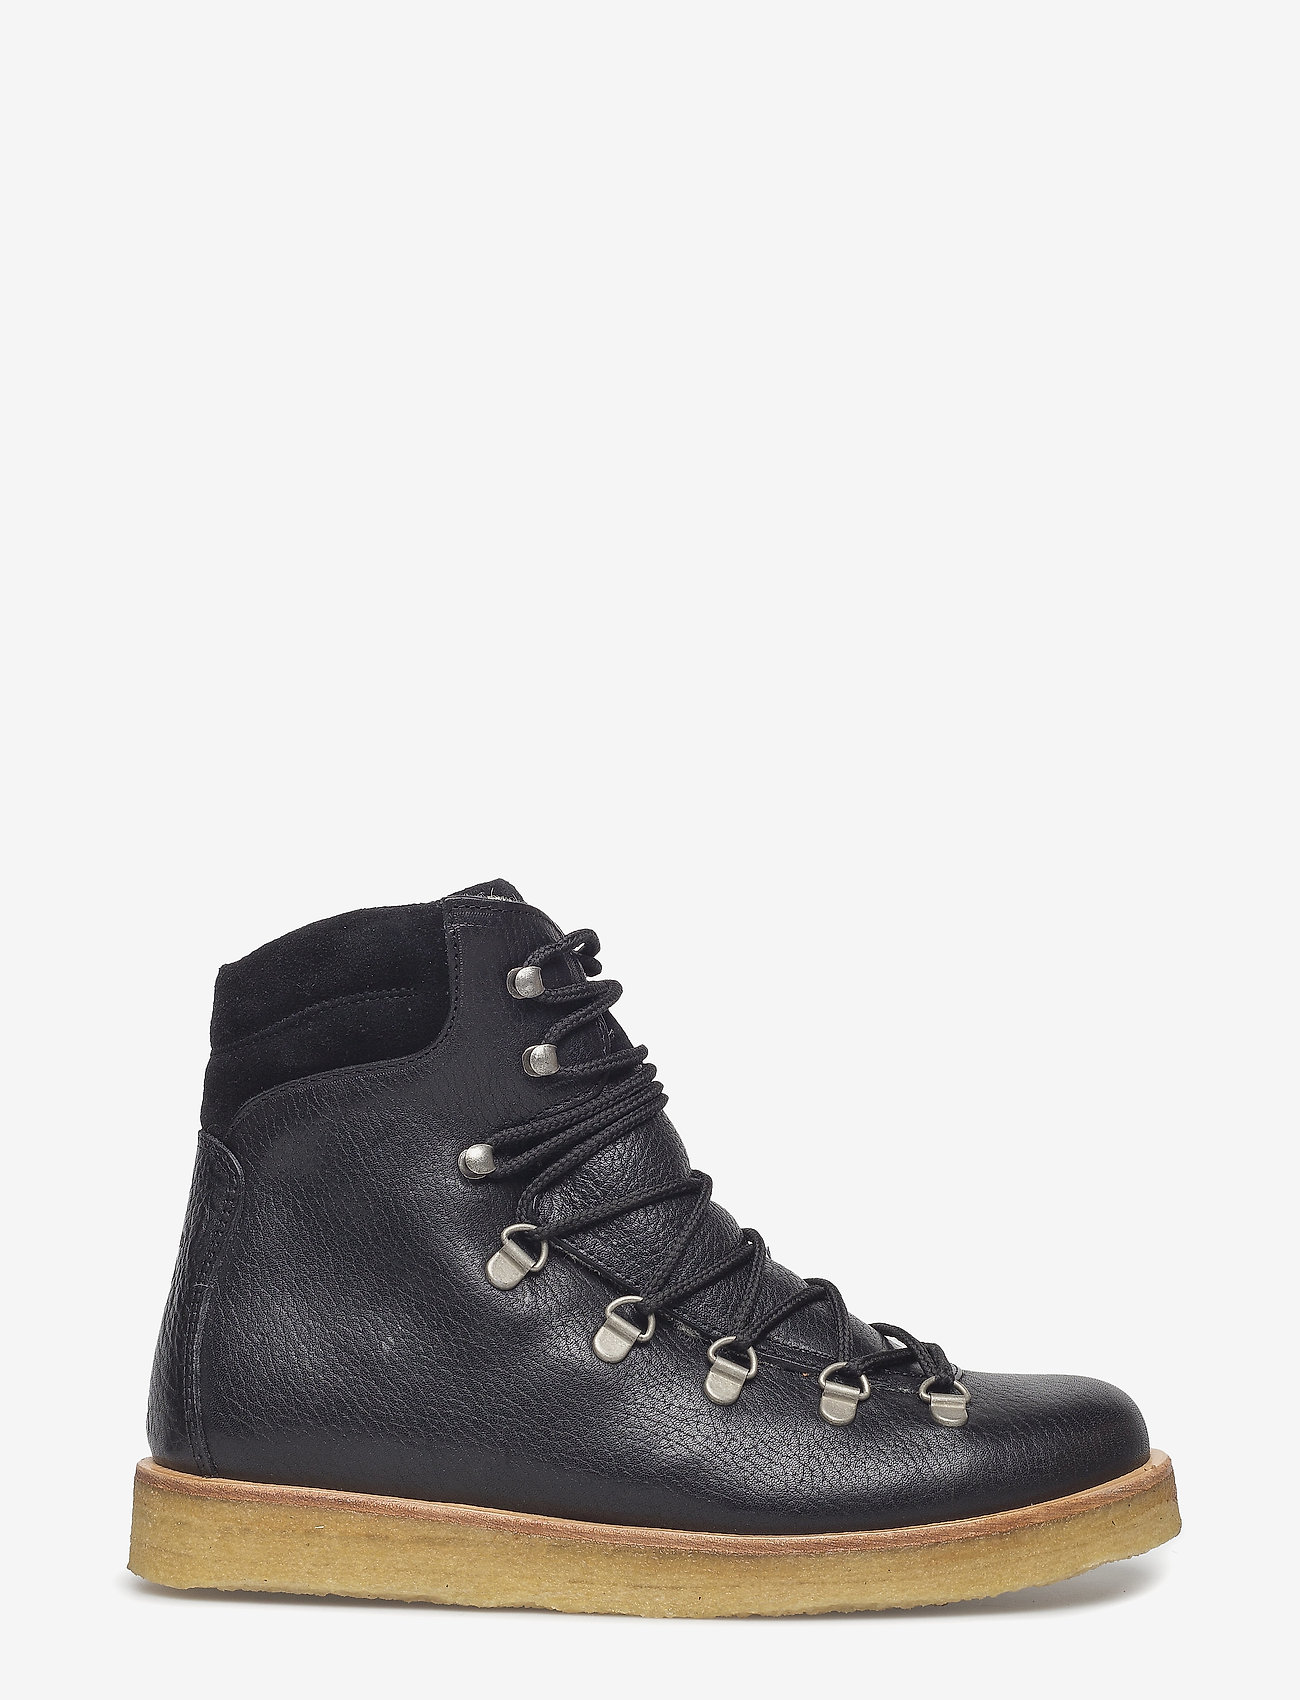 ANGULUS - Boots - flat - with laces - płaskie botki - 2504/1163 black/black - 1